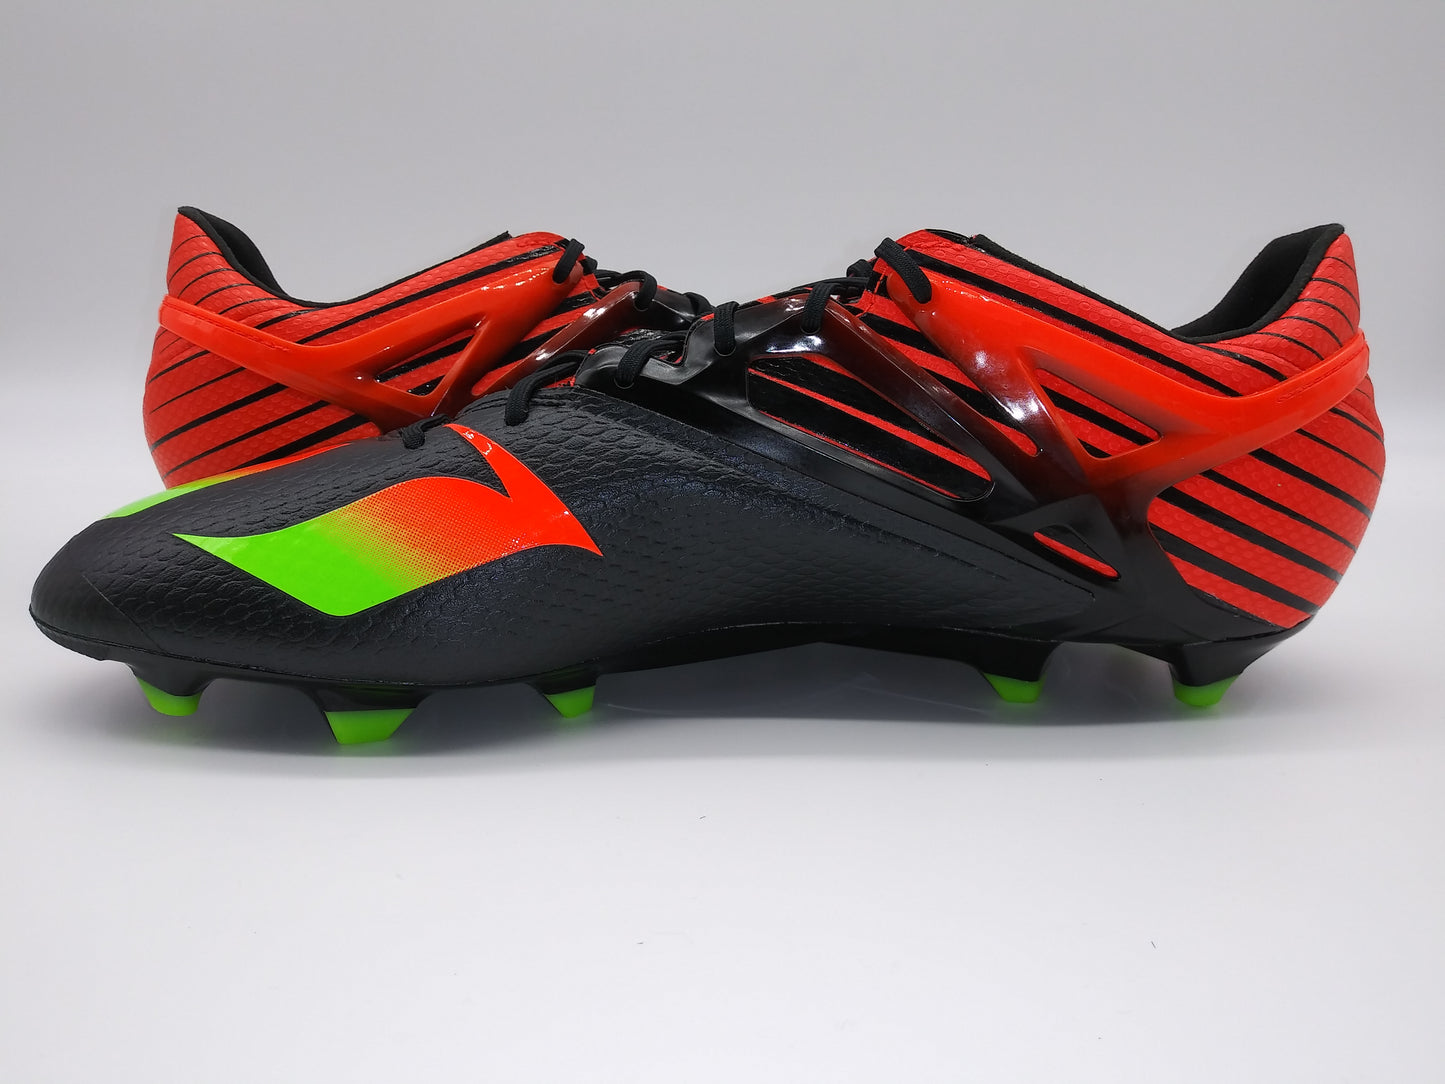 Adidas Messi 15.1 AF4654 Black Red